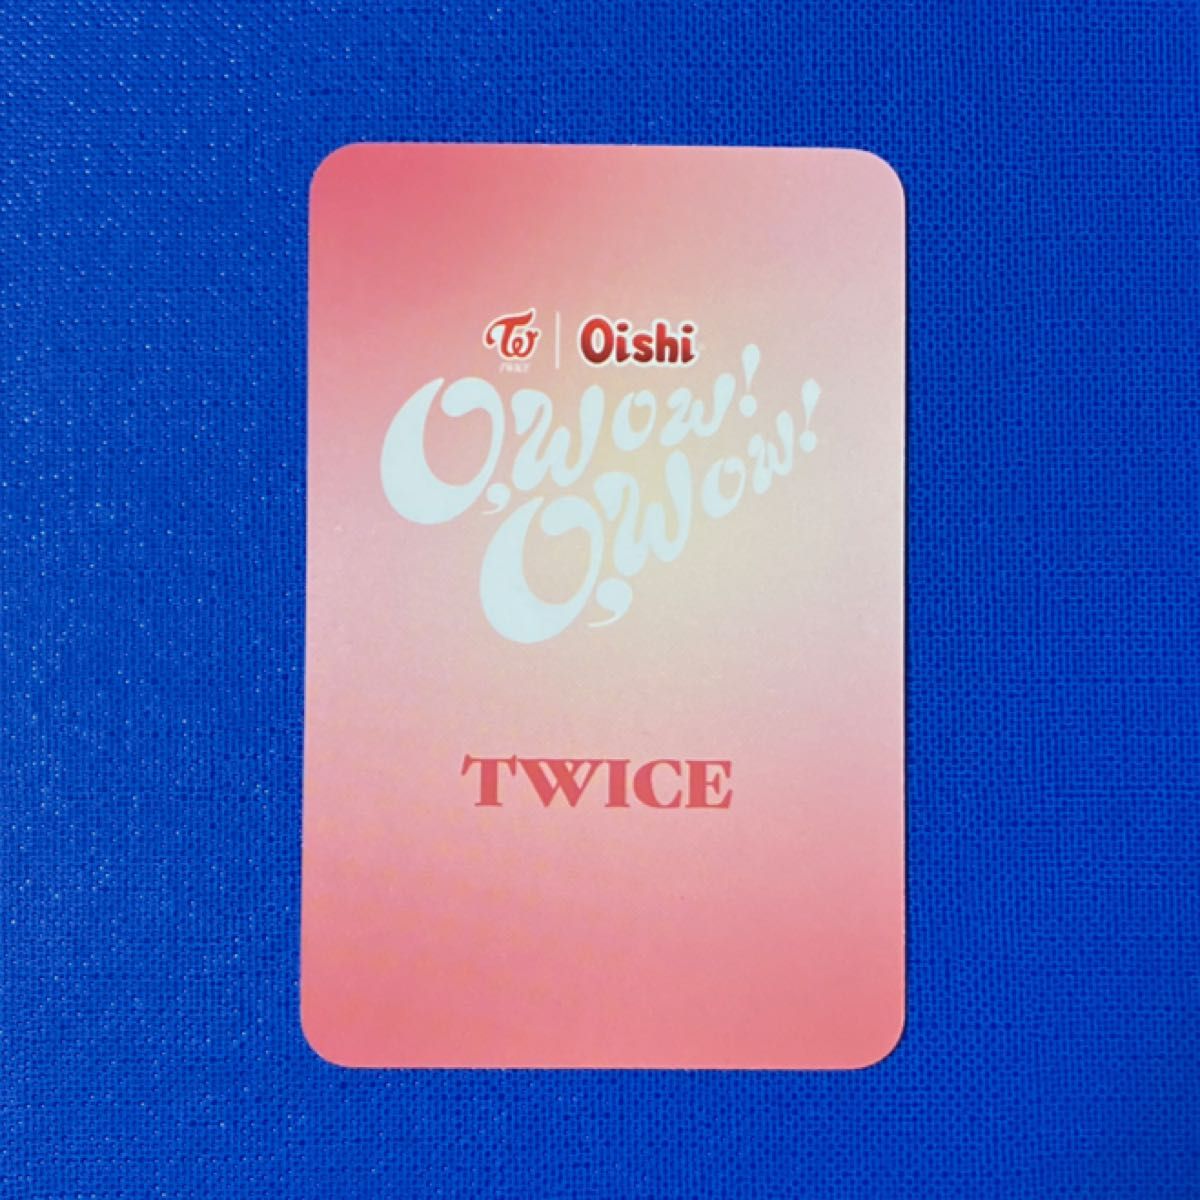 TWICE Oishi オーイシ フィリピン 限定 トレカ ナヨン ジョンヨン サナ ダヒョン ツウィ ユニット